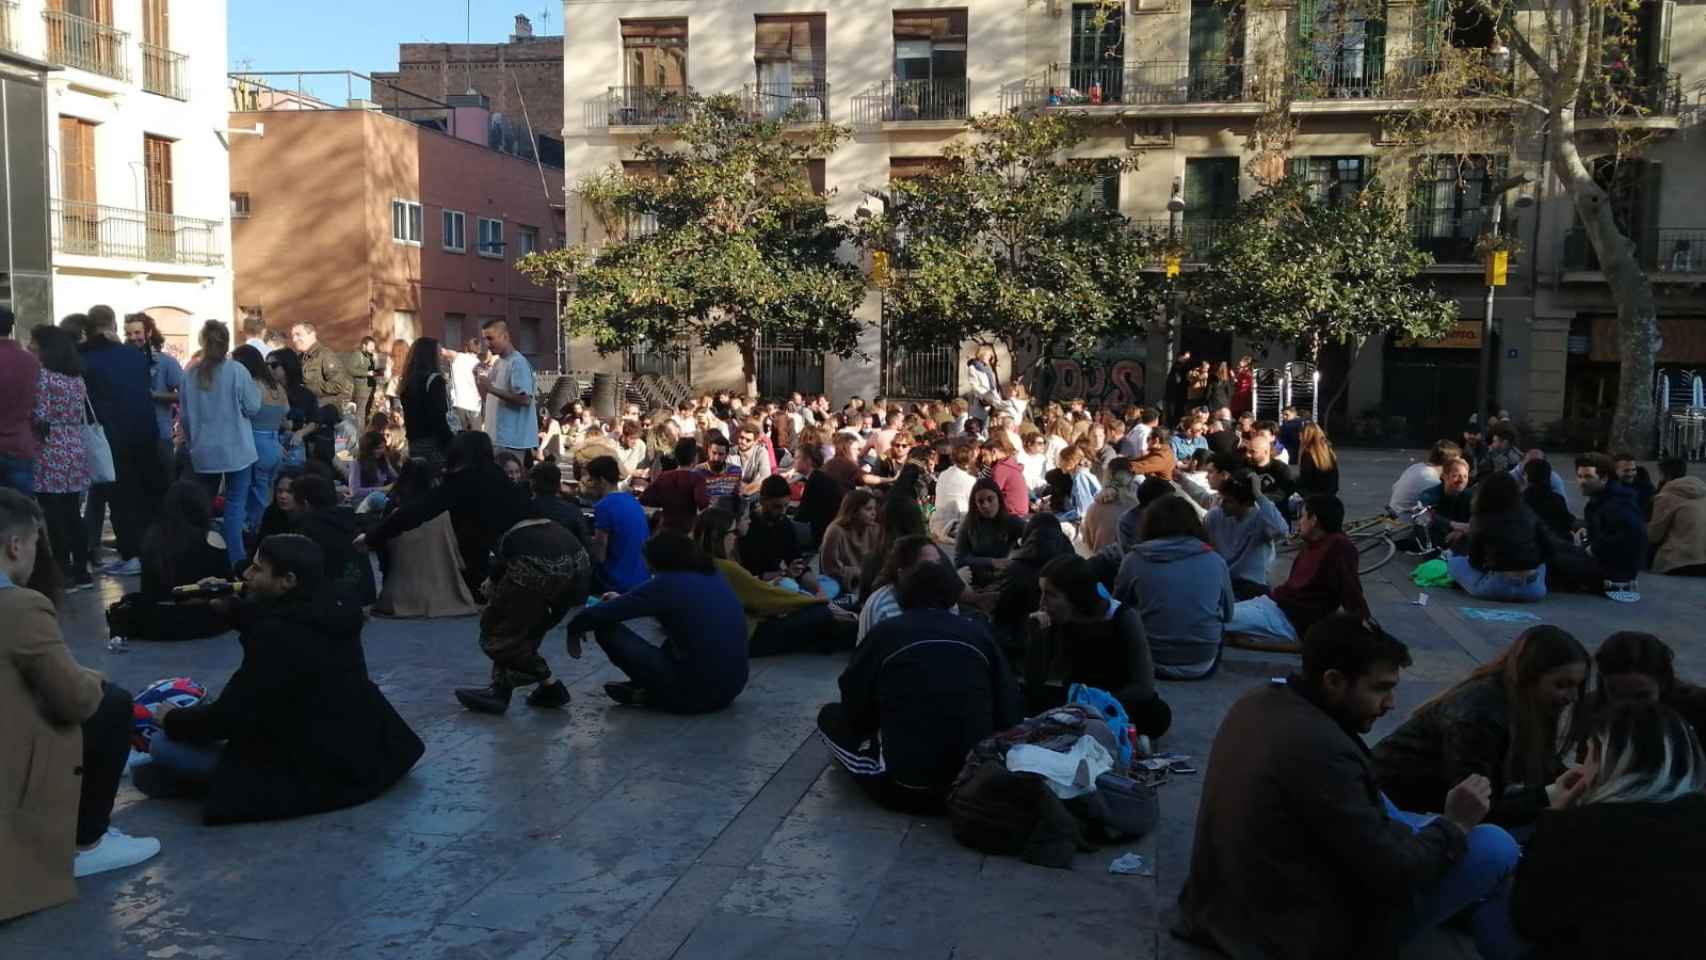 La plaza del Sol de Gràcia, llena de jóvenes esquivando a la policía durante la pandemia / METRÓPOLI ABIERTA